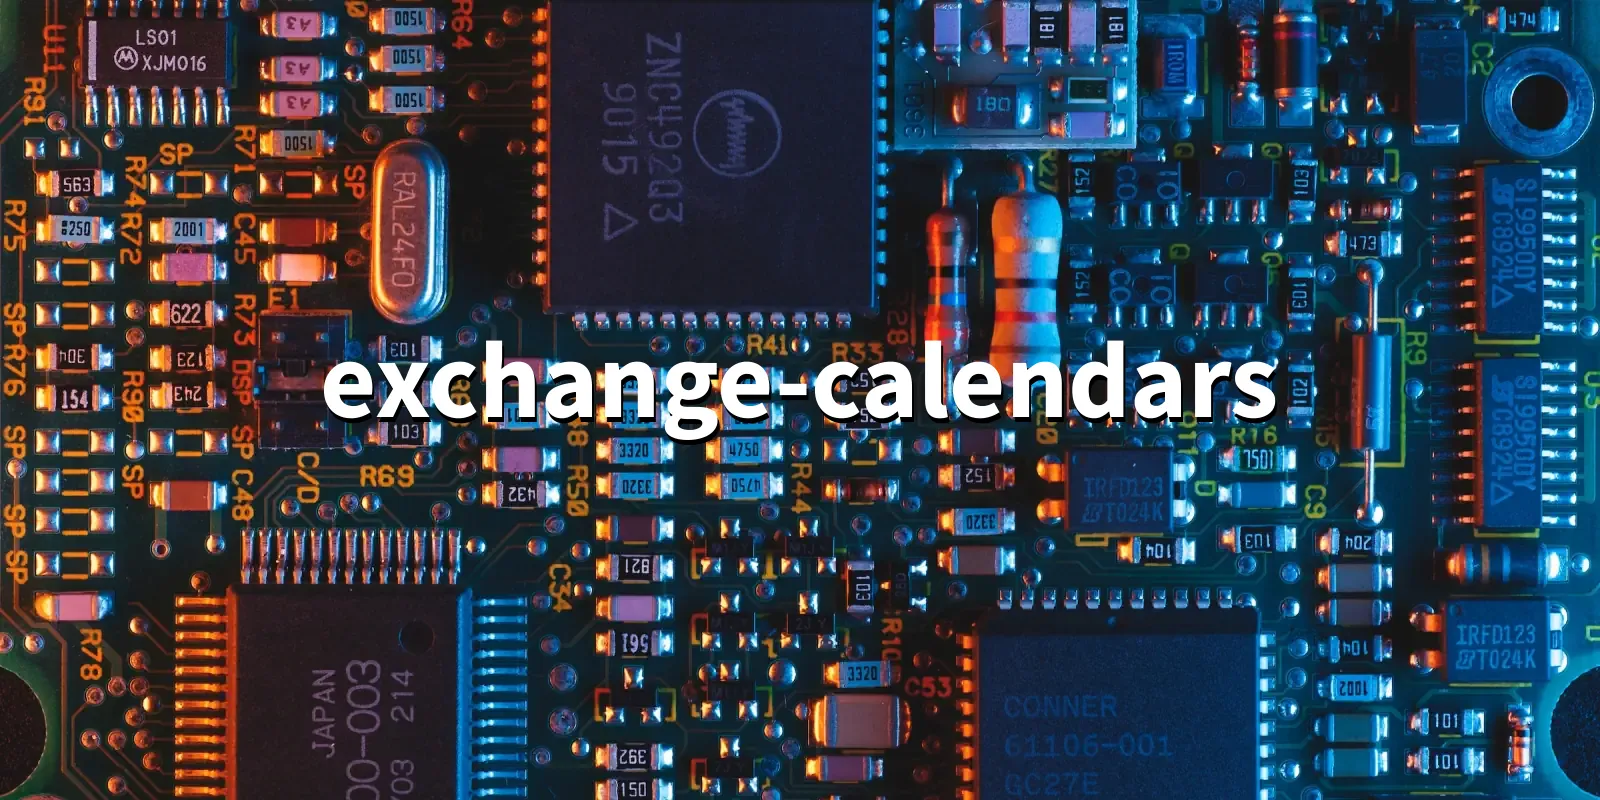 exchangecalendars 4.5.3 Calendars for securities exchanges